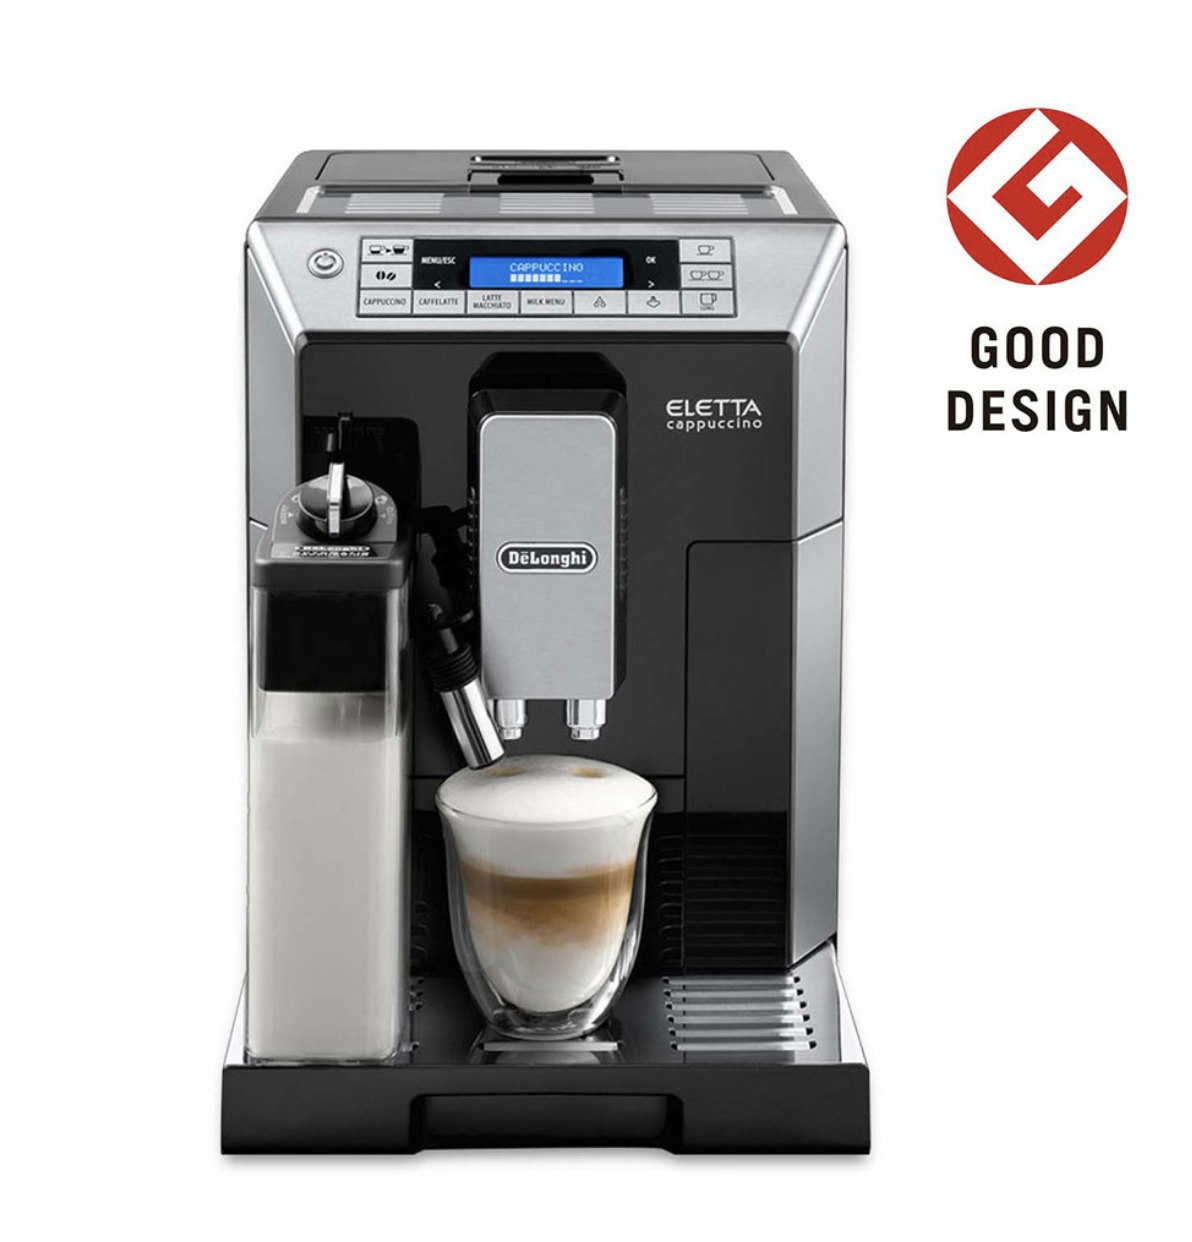 見事な Tesoro全自動コーヒーメーカー デロンギ 全自動エスプレッソマシン 全自動コーヒーマシン ECAM23420SBN スペリオレ 